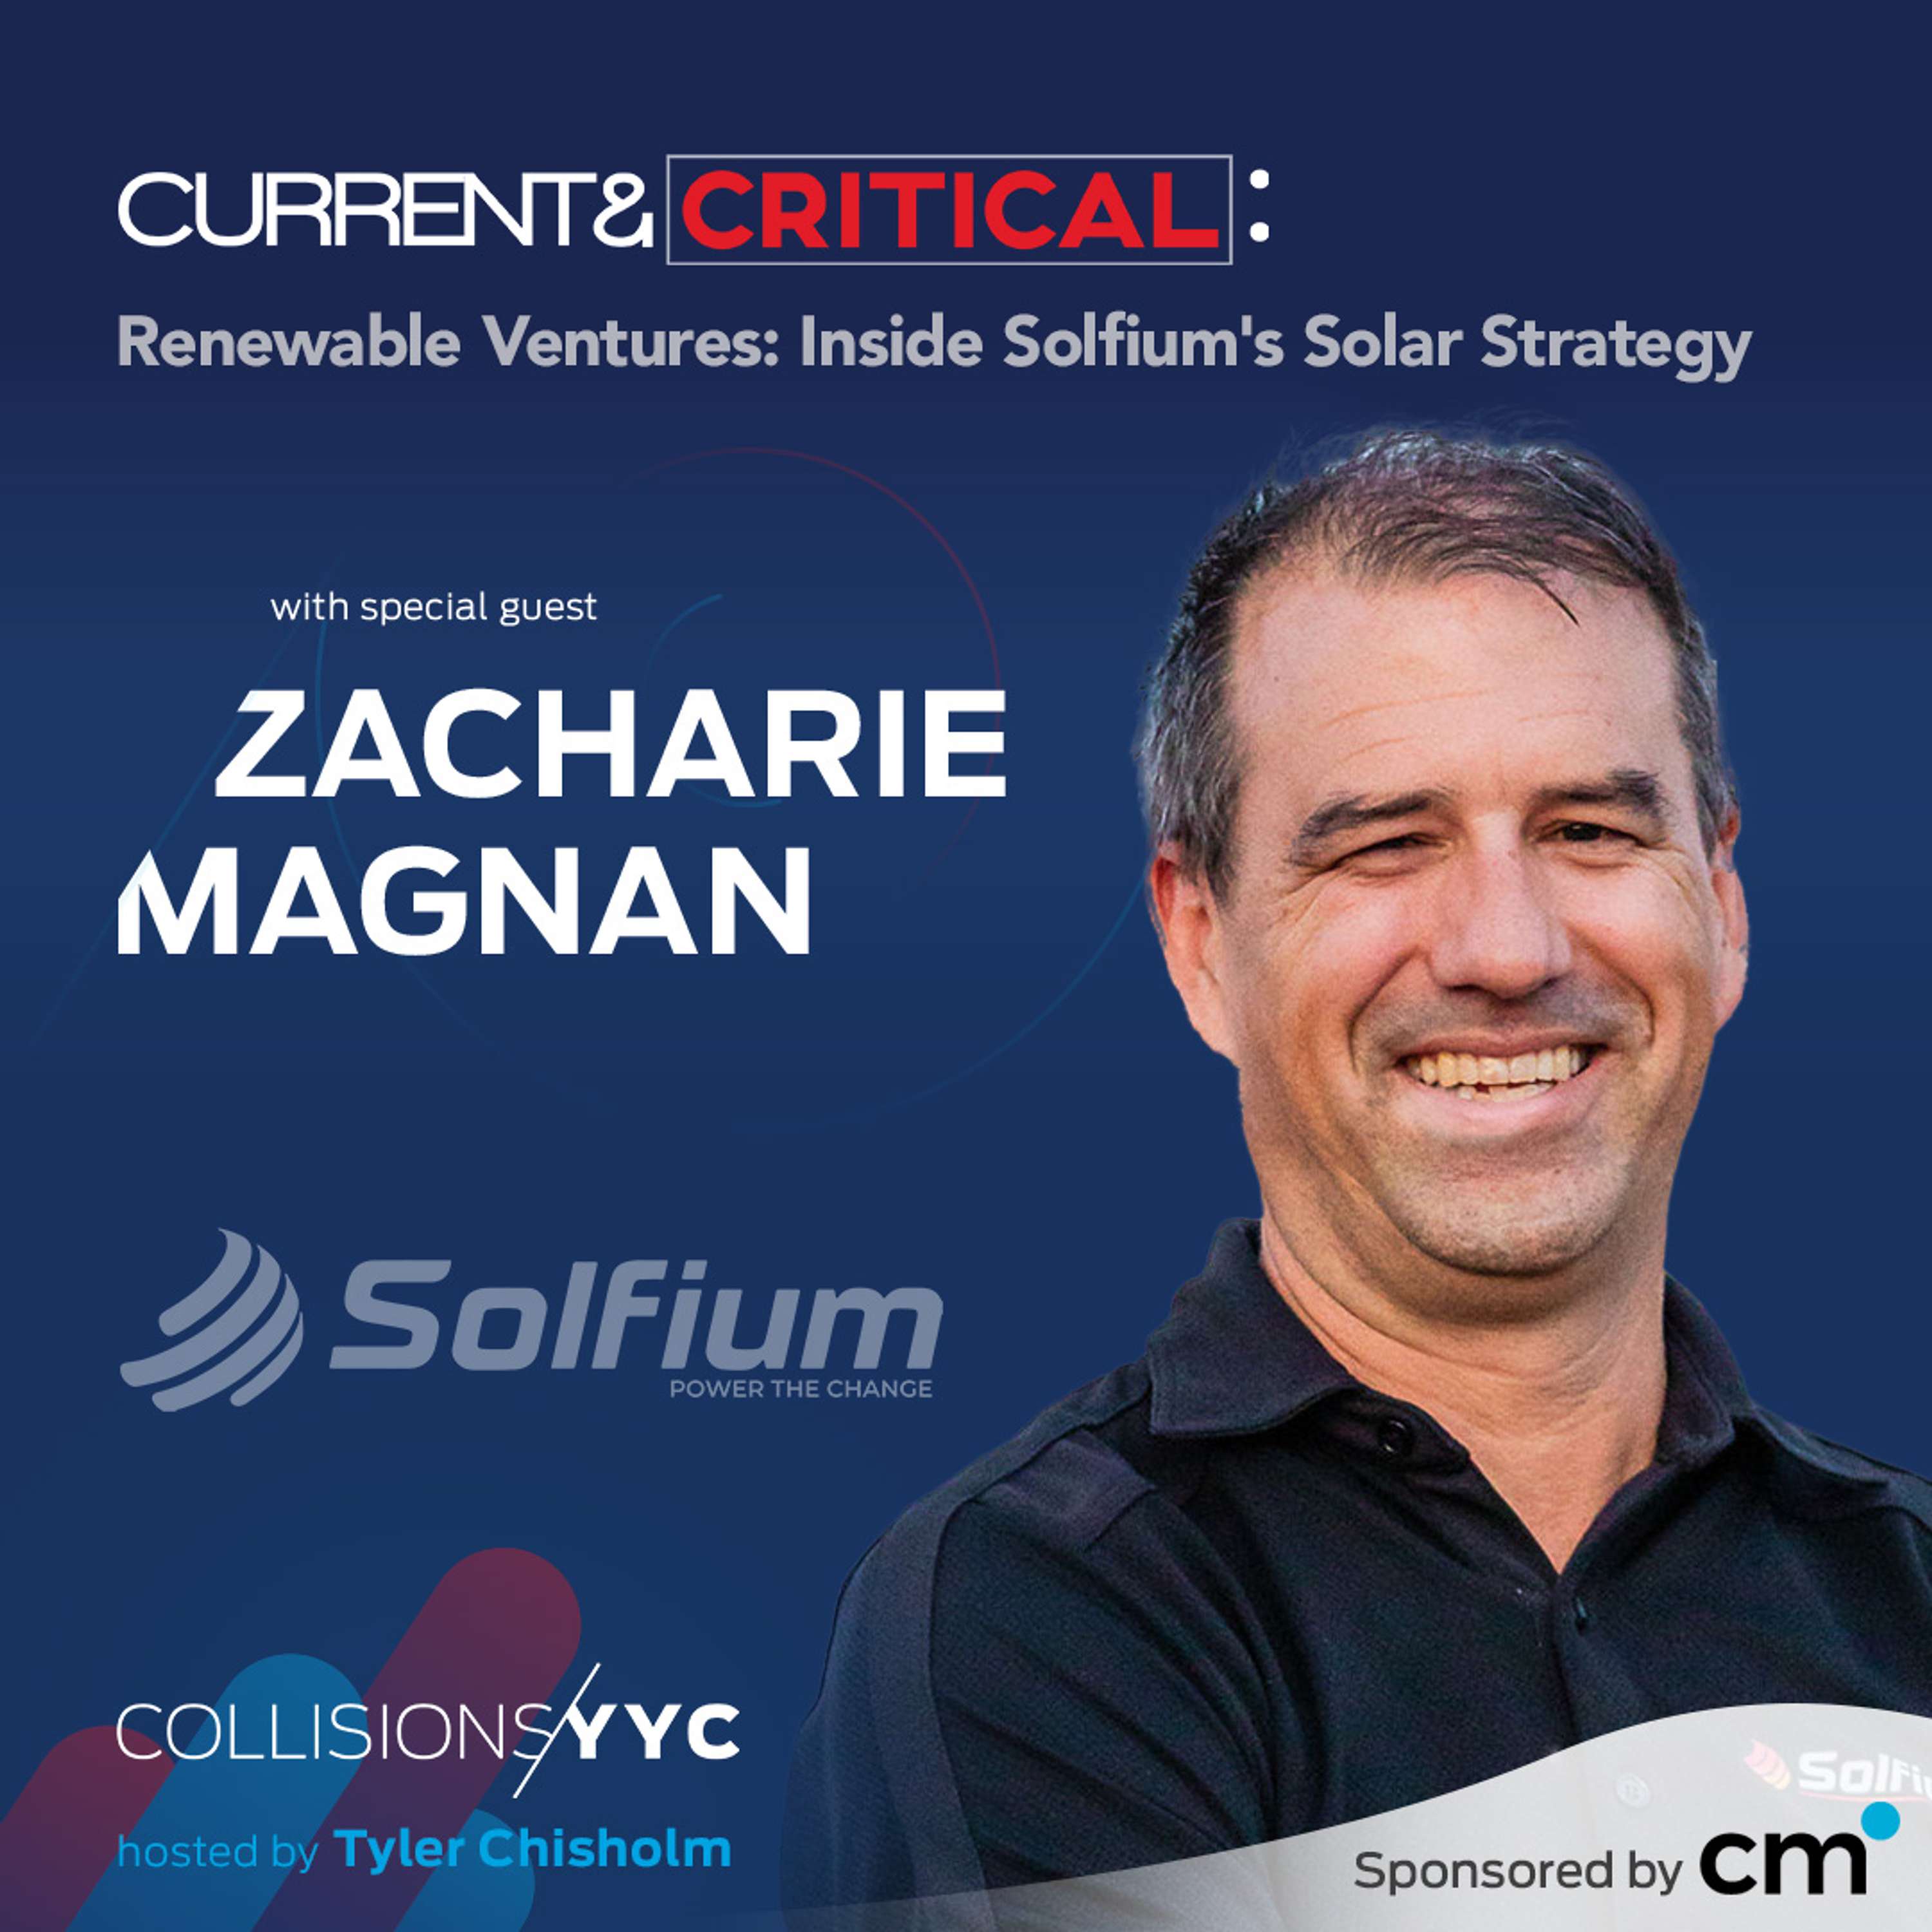 Zacharie Magnan, Renewable Ventures: Inside Solfium’s Solar Strategy